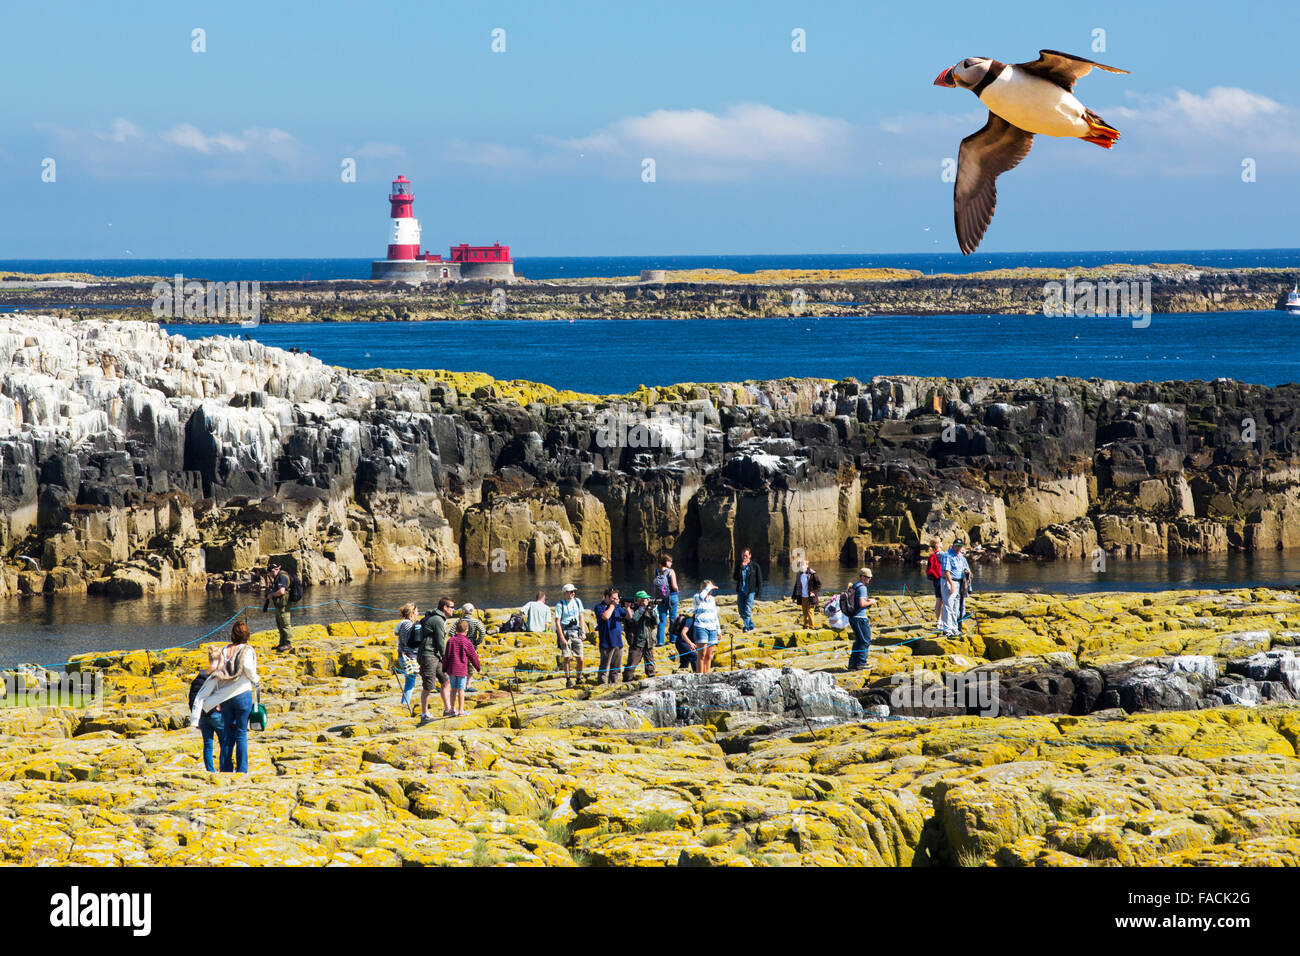 Les touristes sur les îles Farne, Northumberland, Angleterre, parmi les oiseaux marins, avec le derrière avec un phare Longstone Macareux moine Banque D'Images